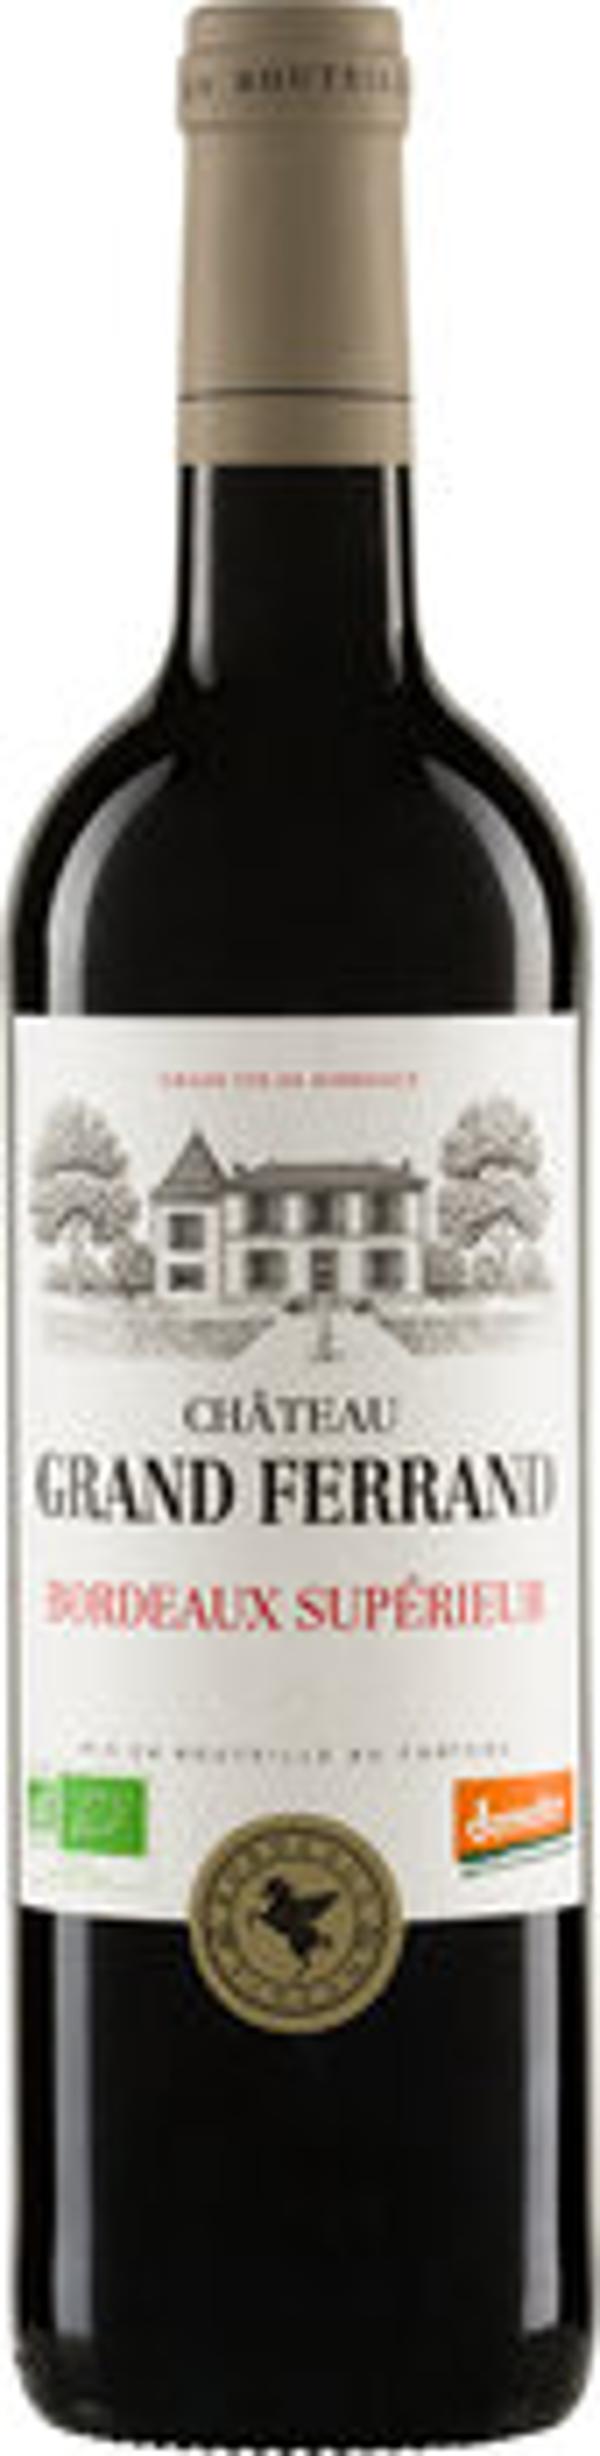 Produktfoto zu Château GRAND FERRAND Bordeaux